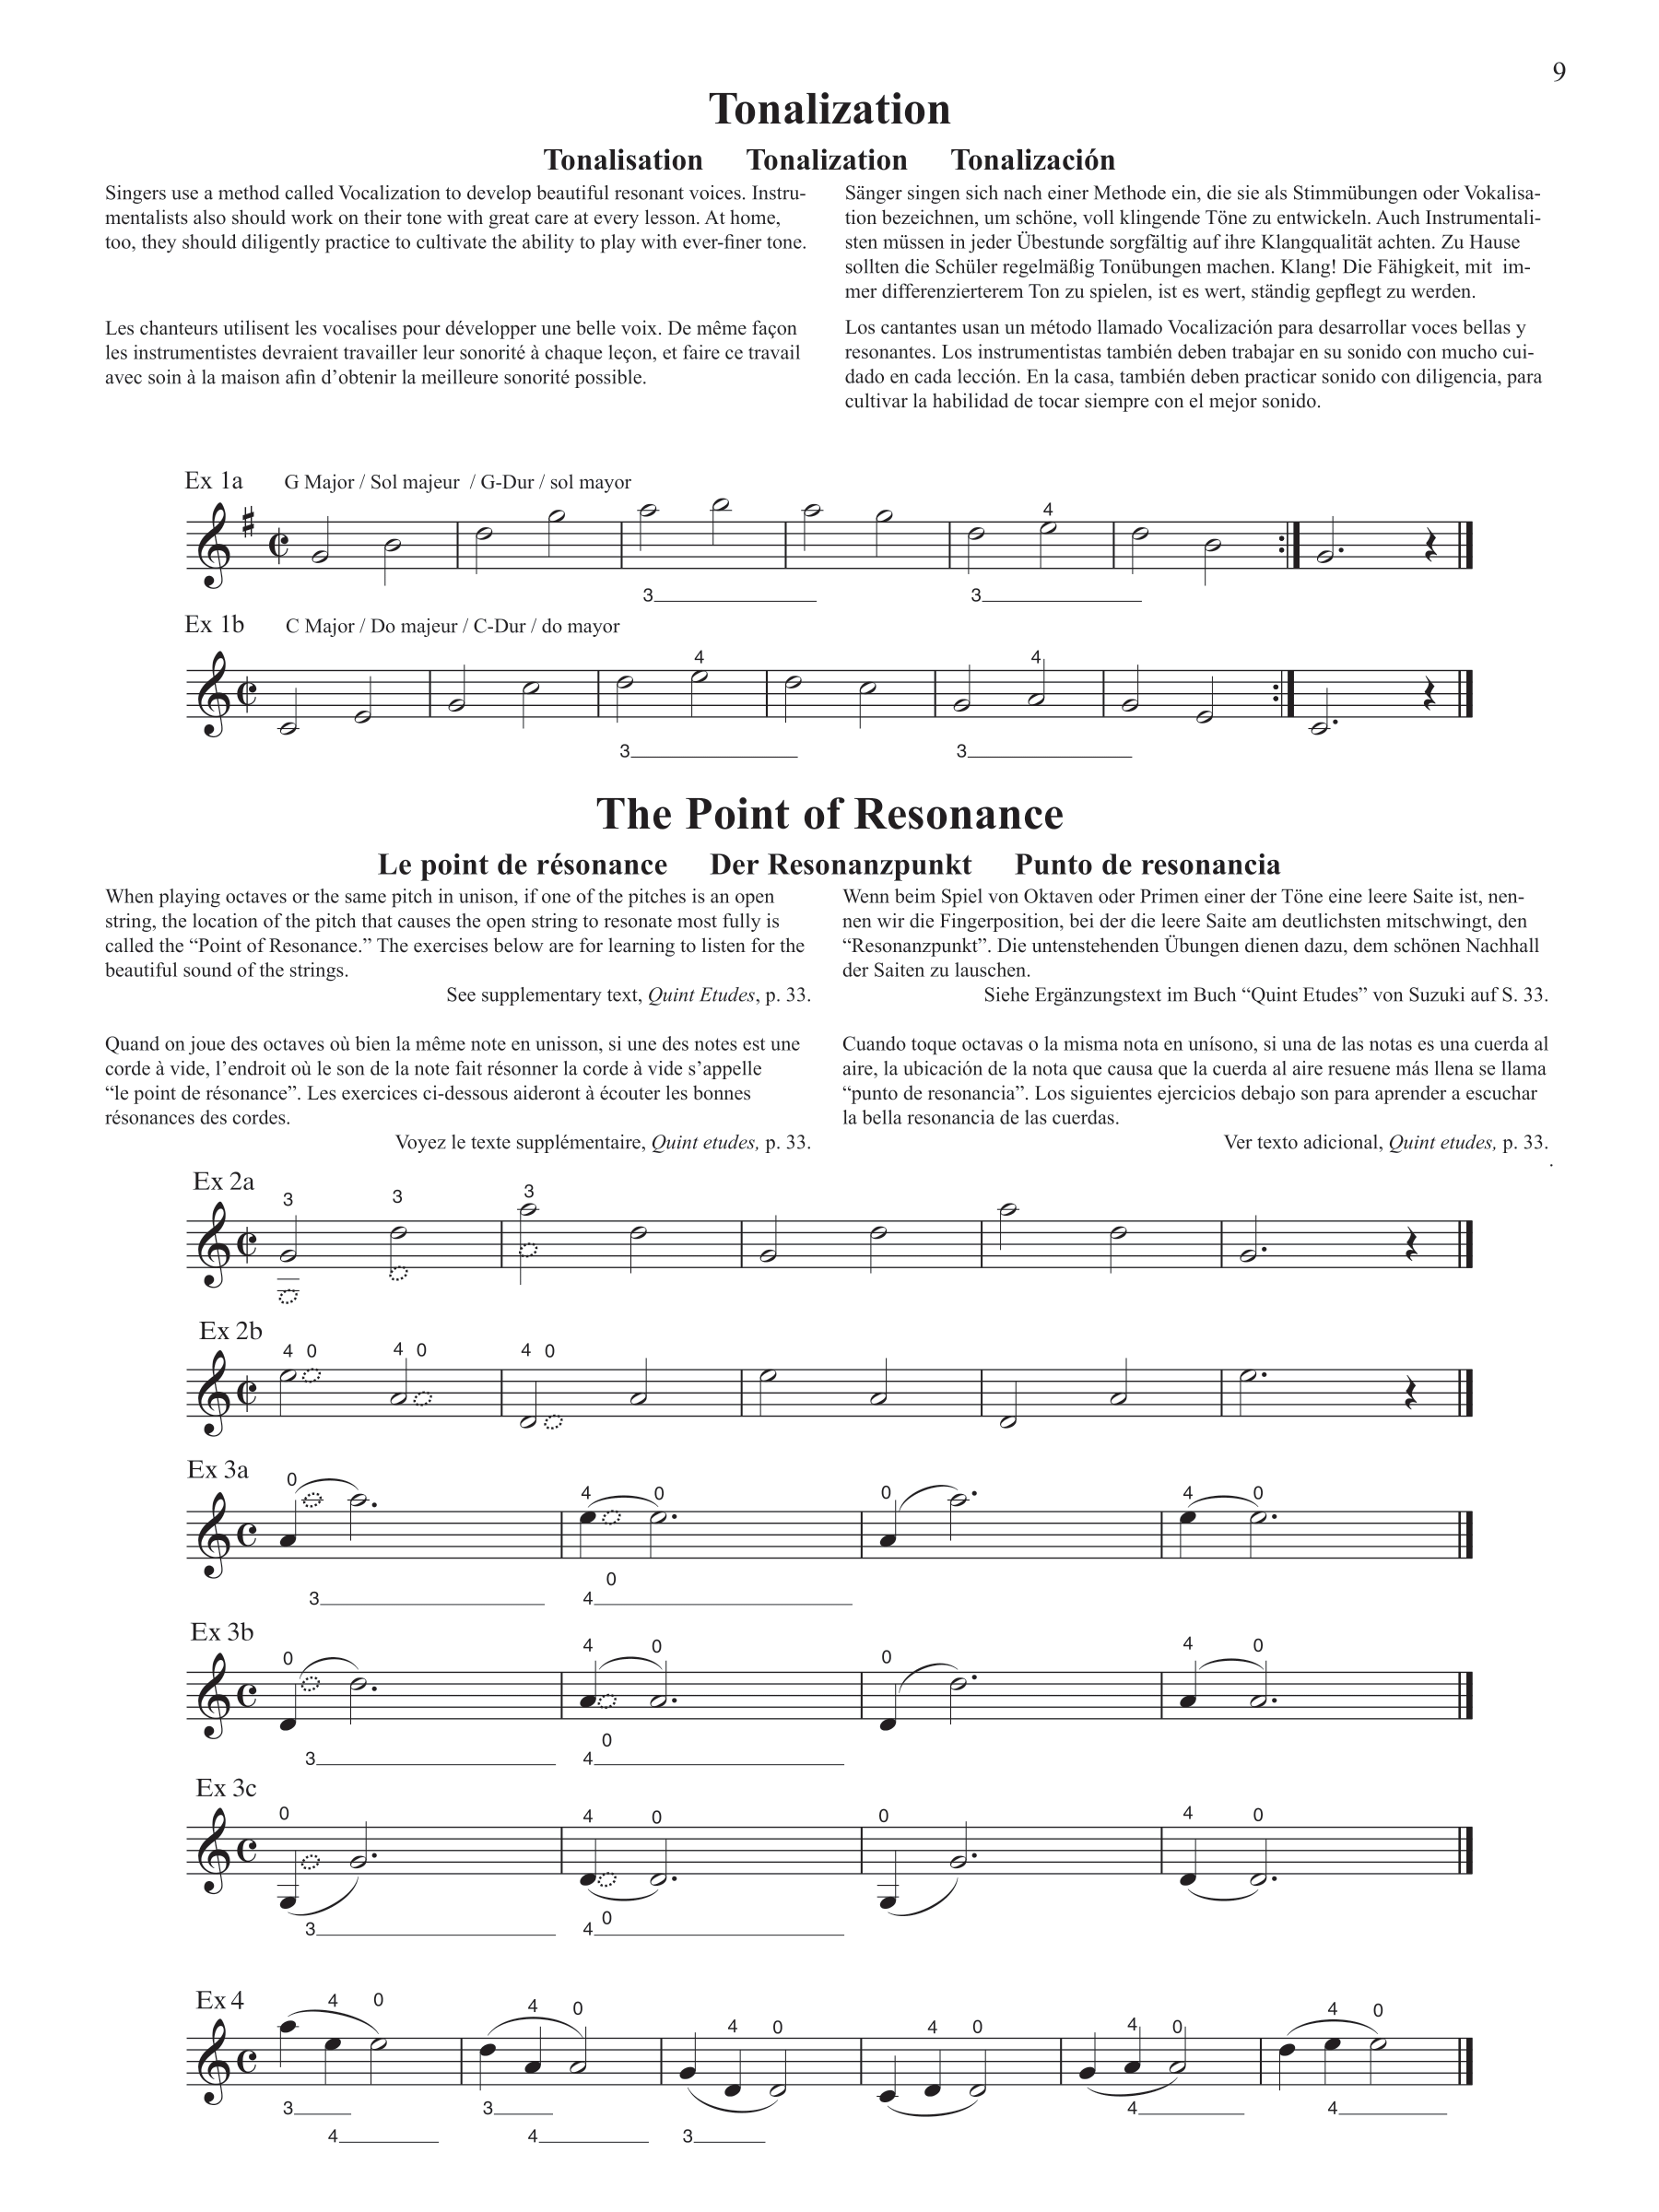 Suzuki Violin School - Part Volume 2 Book Strings